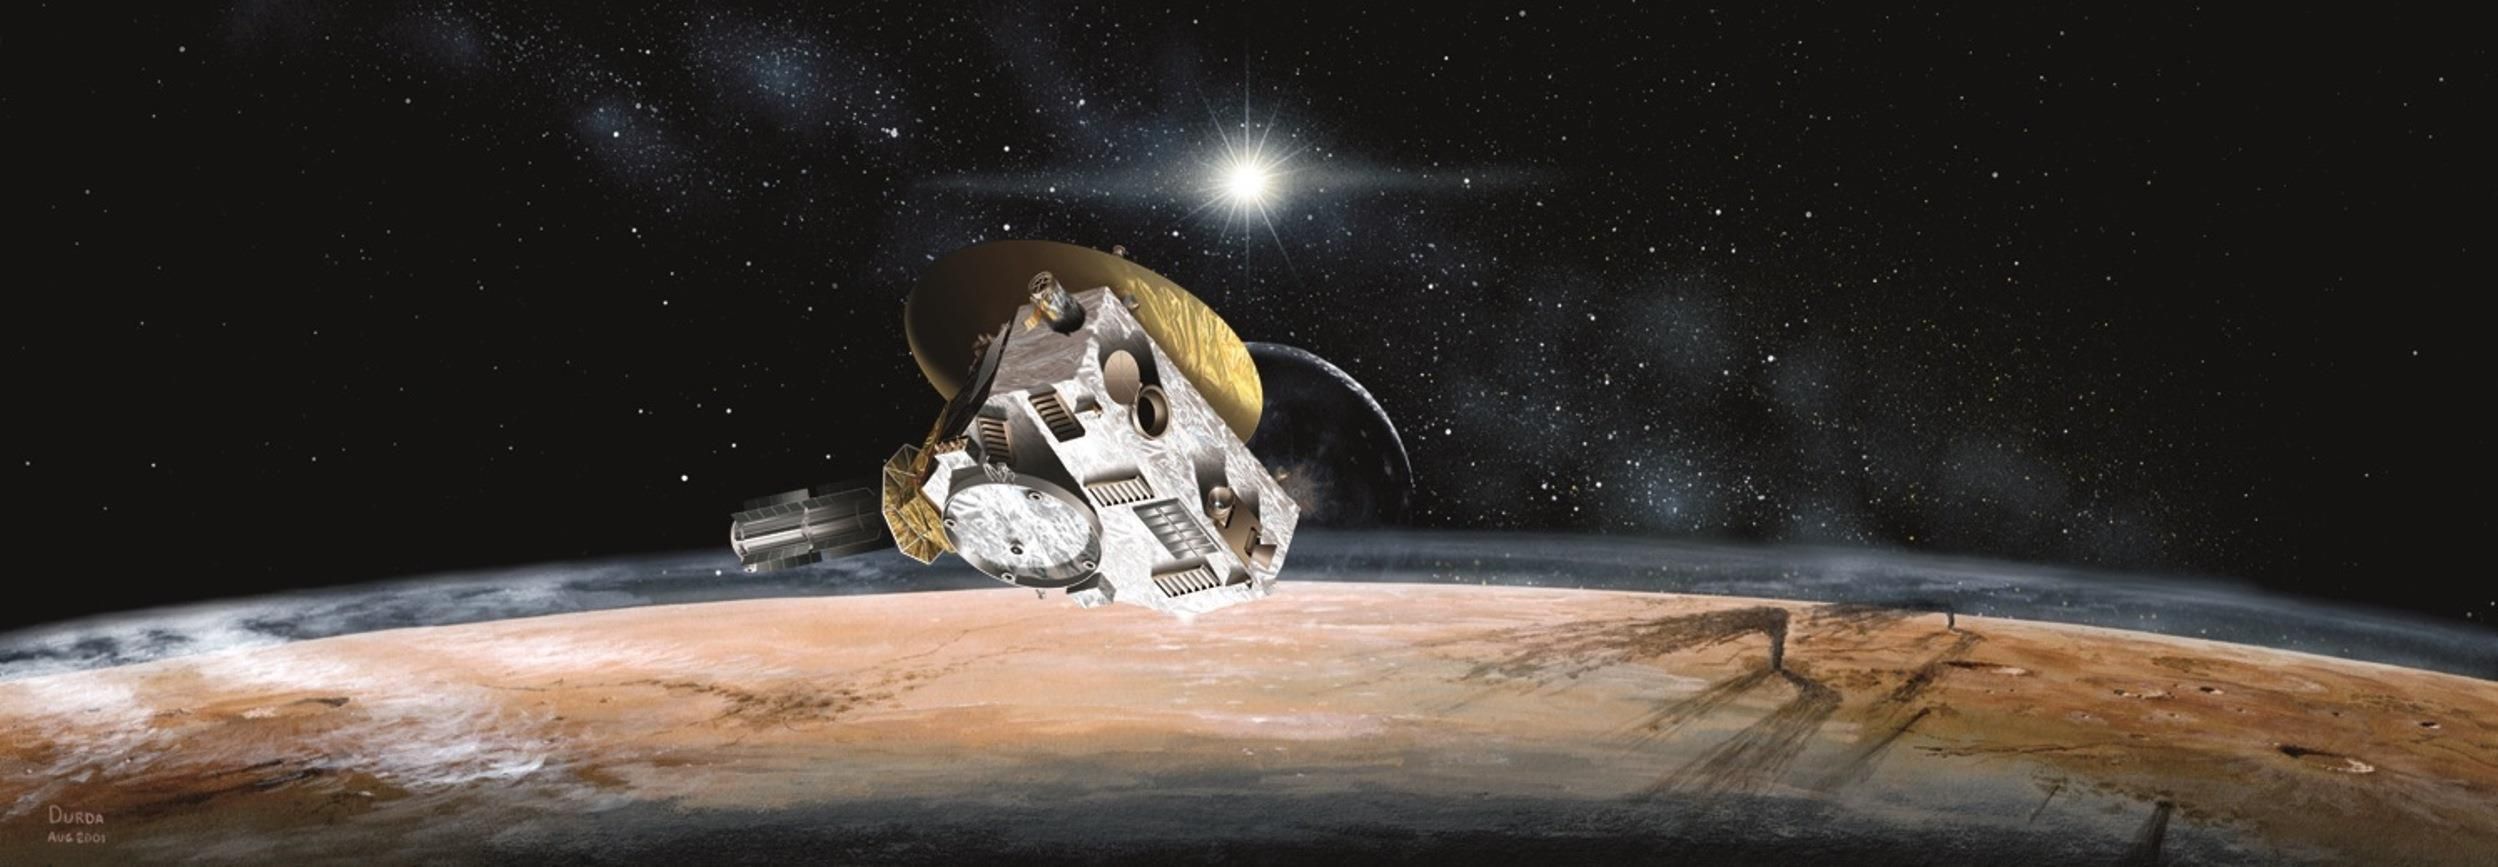 New Horizons вышел из глубокого сна для "свидания" с астероидом